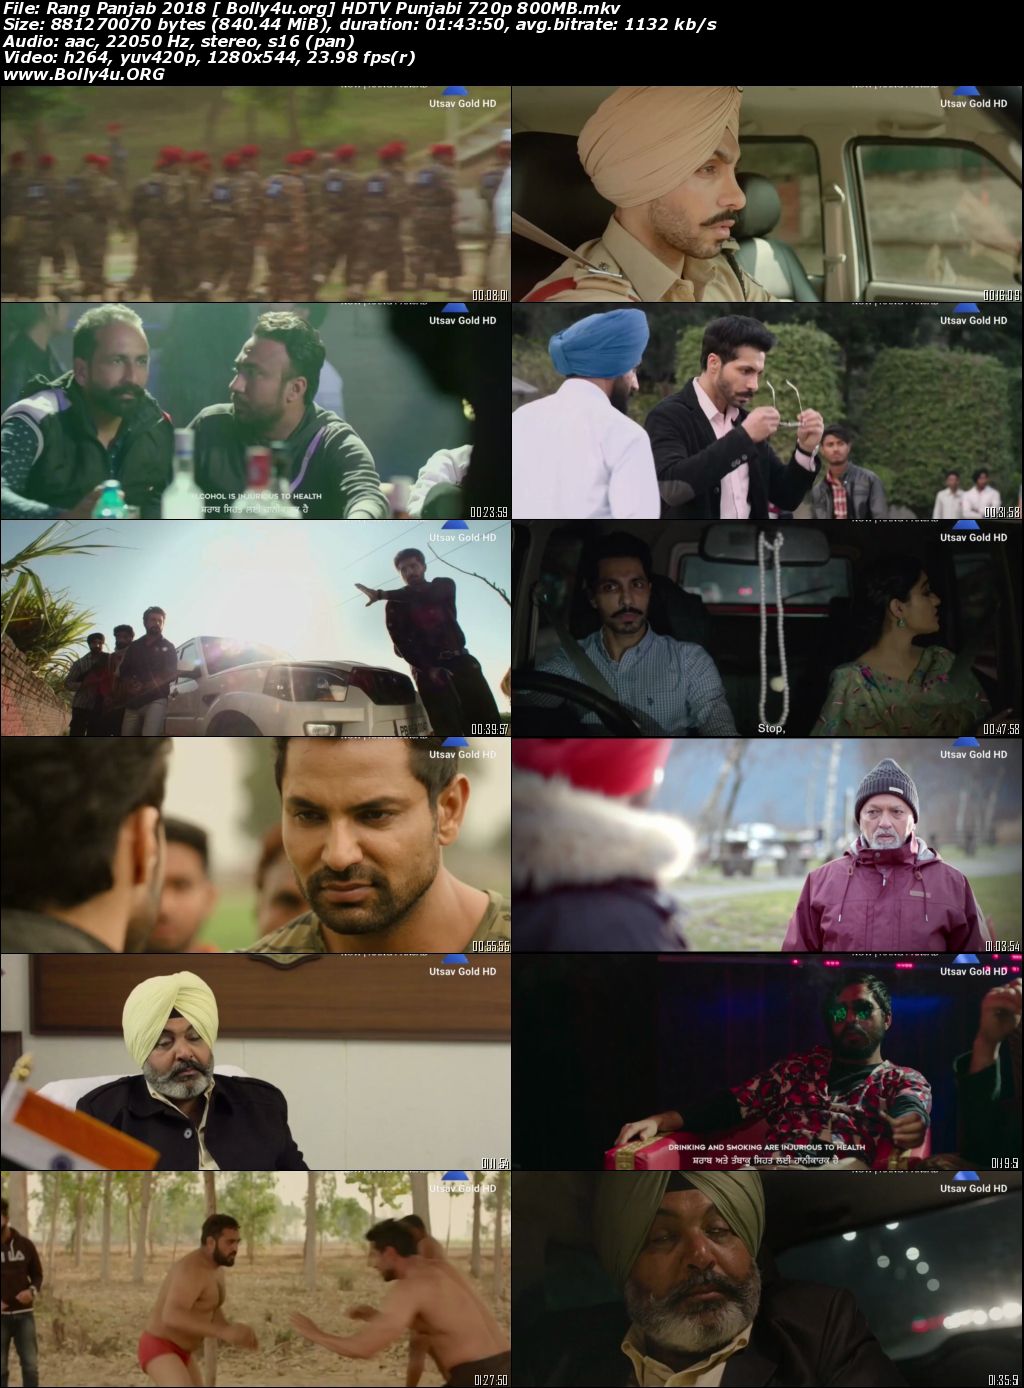 Rang Panjab 2018 HDTV 800MB Punjabi 720p Download